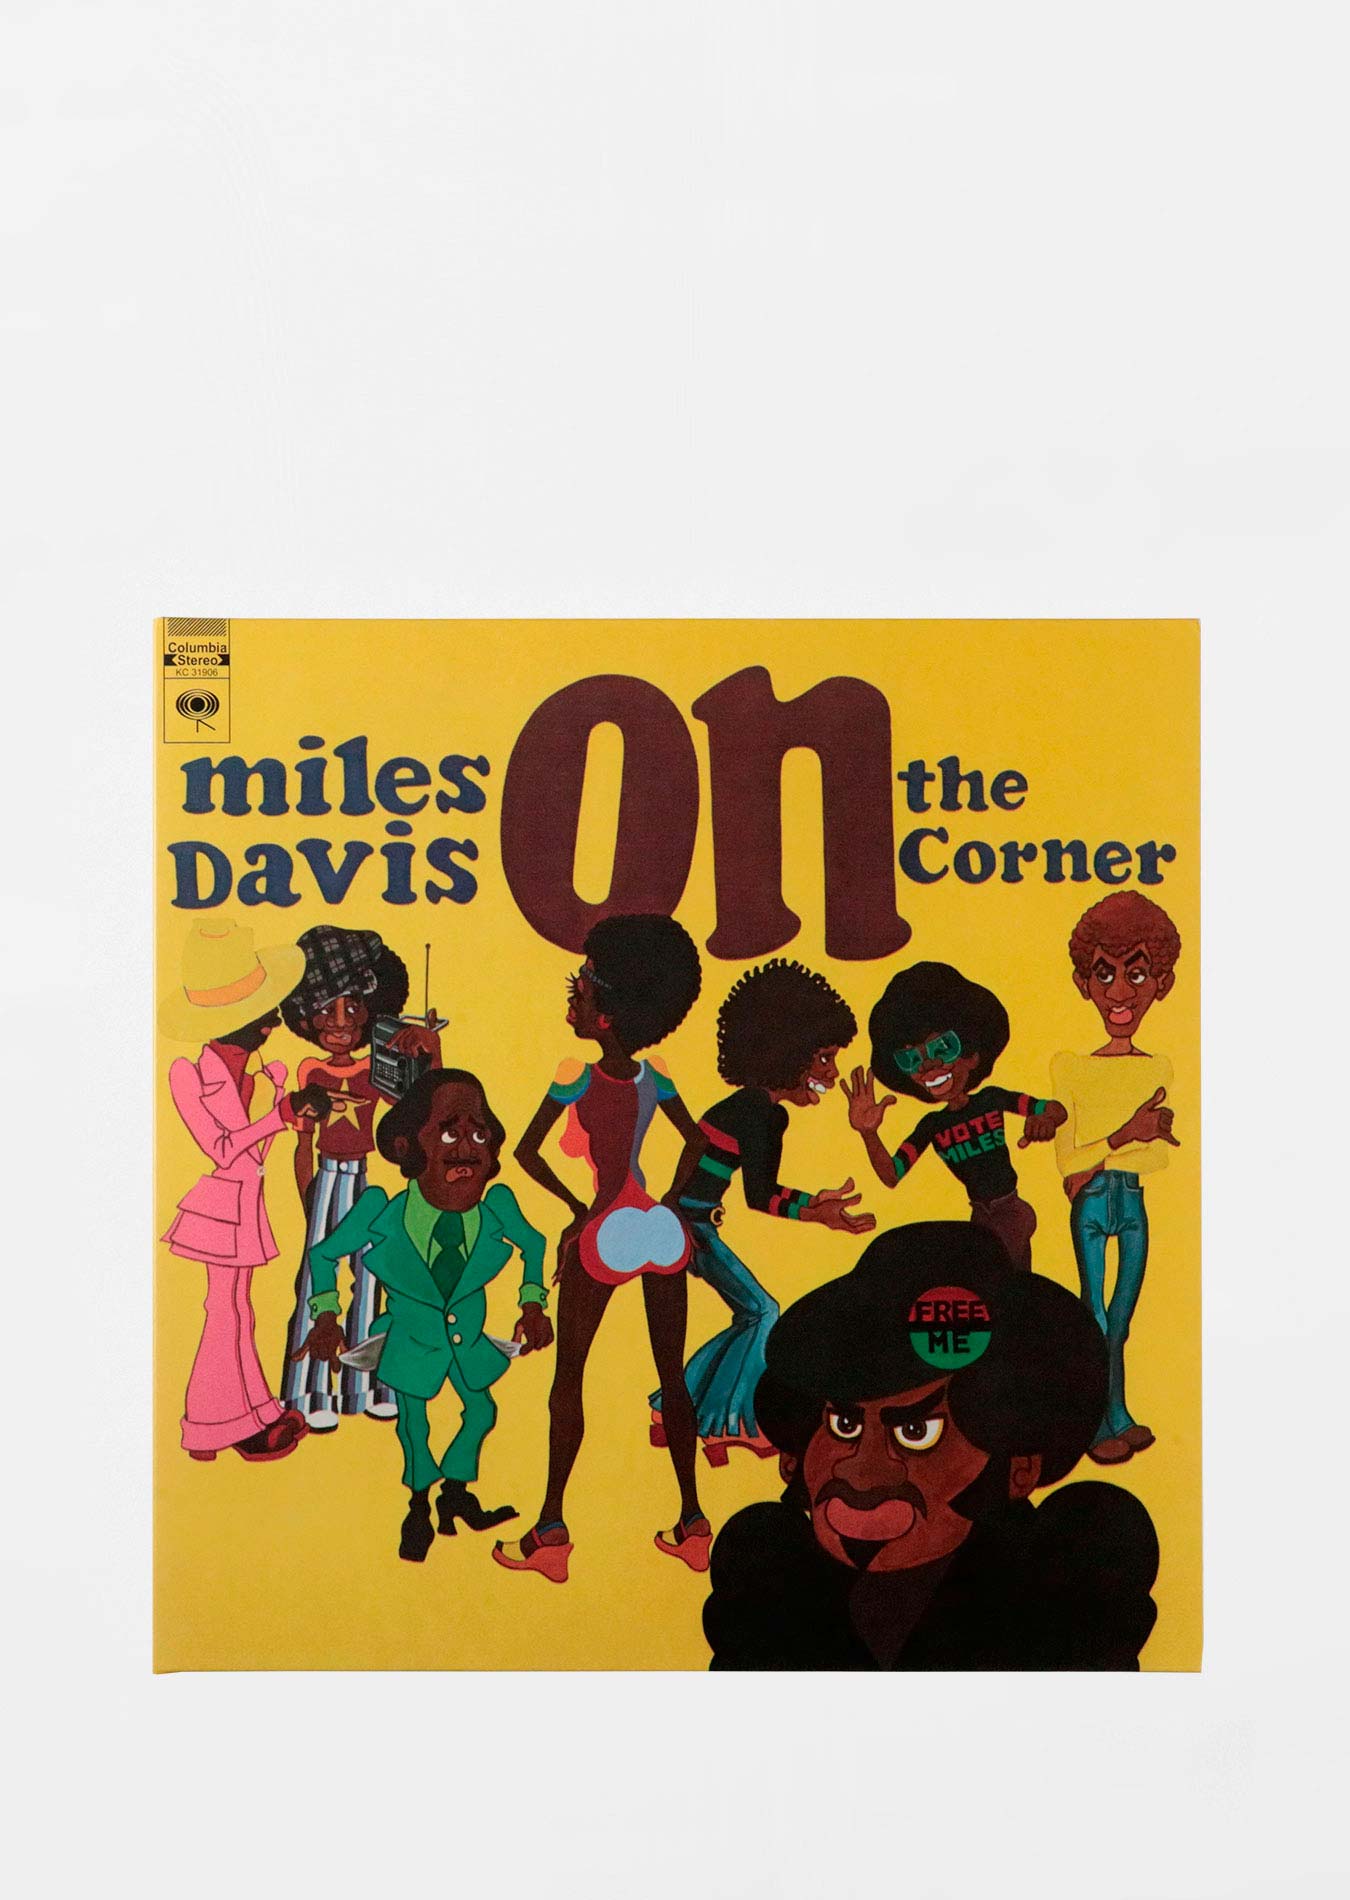 Traadd - Miles Davis / On The Corner ｜ LP – directorscode.com